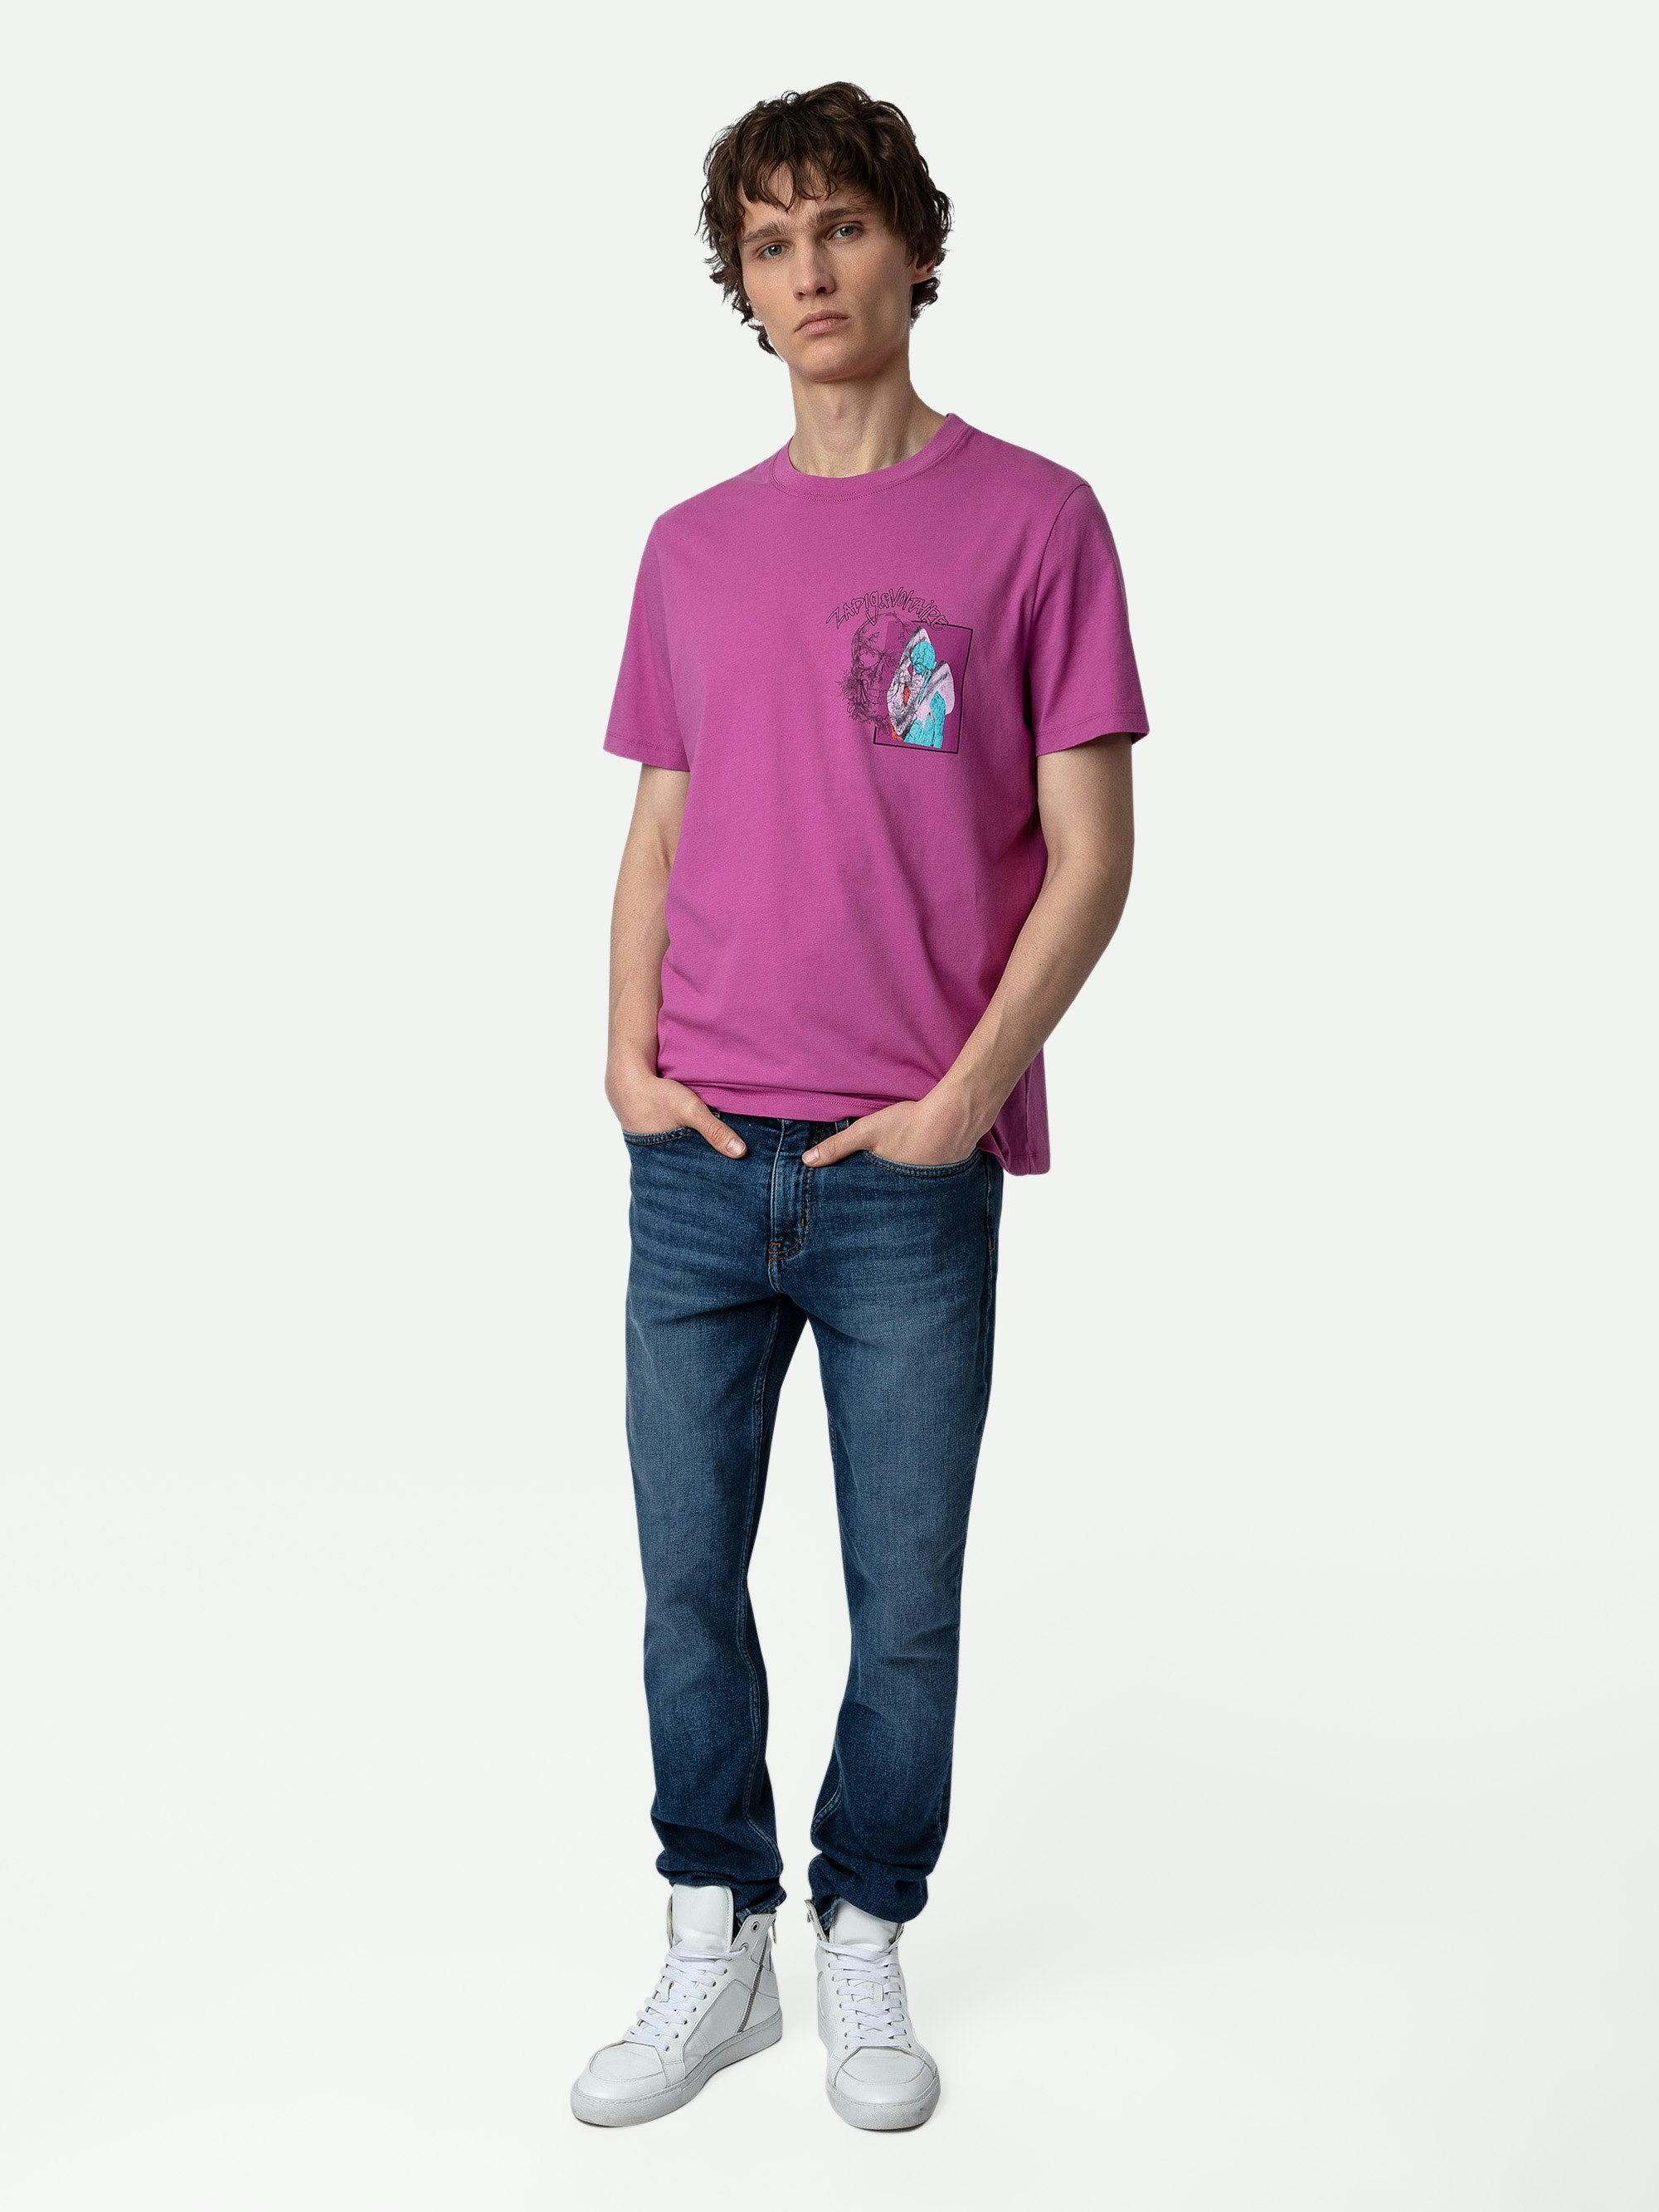 T-shirt Ted Photoprint - T-shirt in cotone fucsia con stampa fotografica Graffiti con teschio.